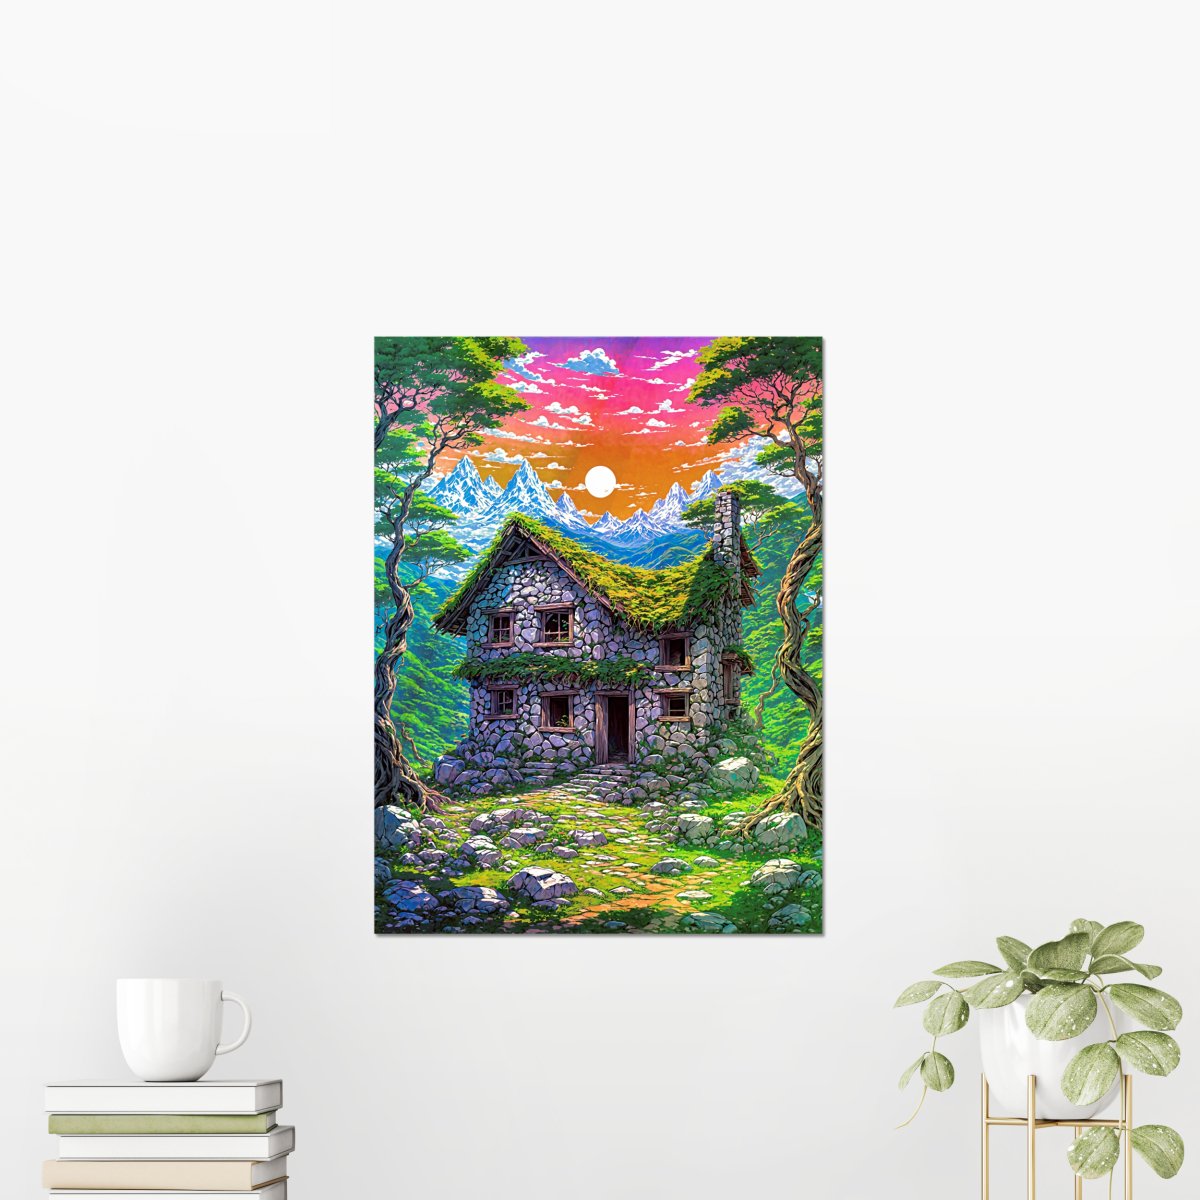 Forsaken manor - Art print - Poster - Ever colorful